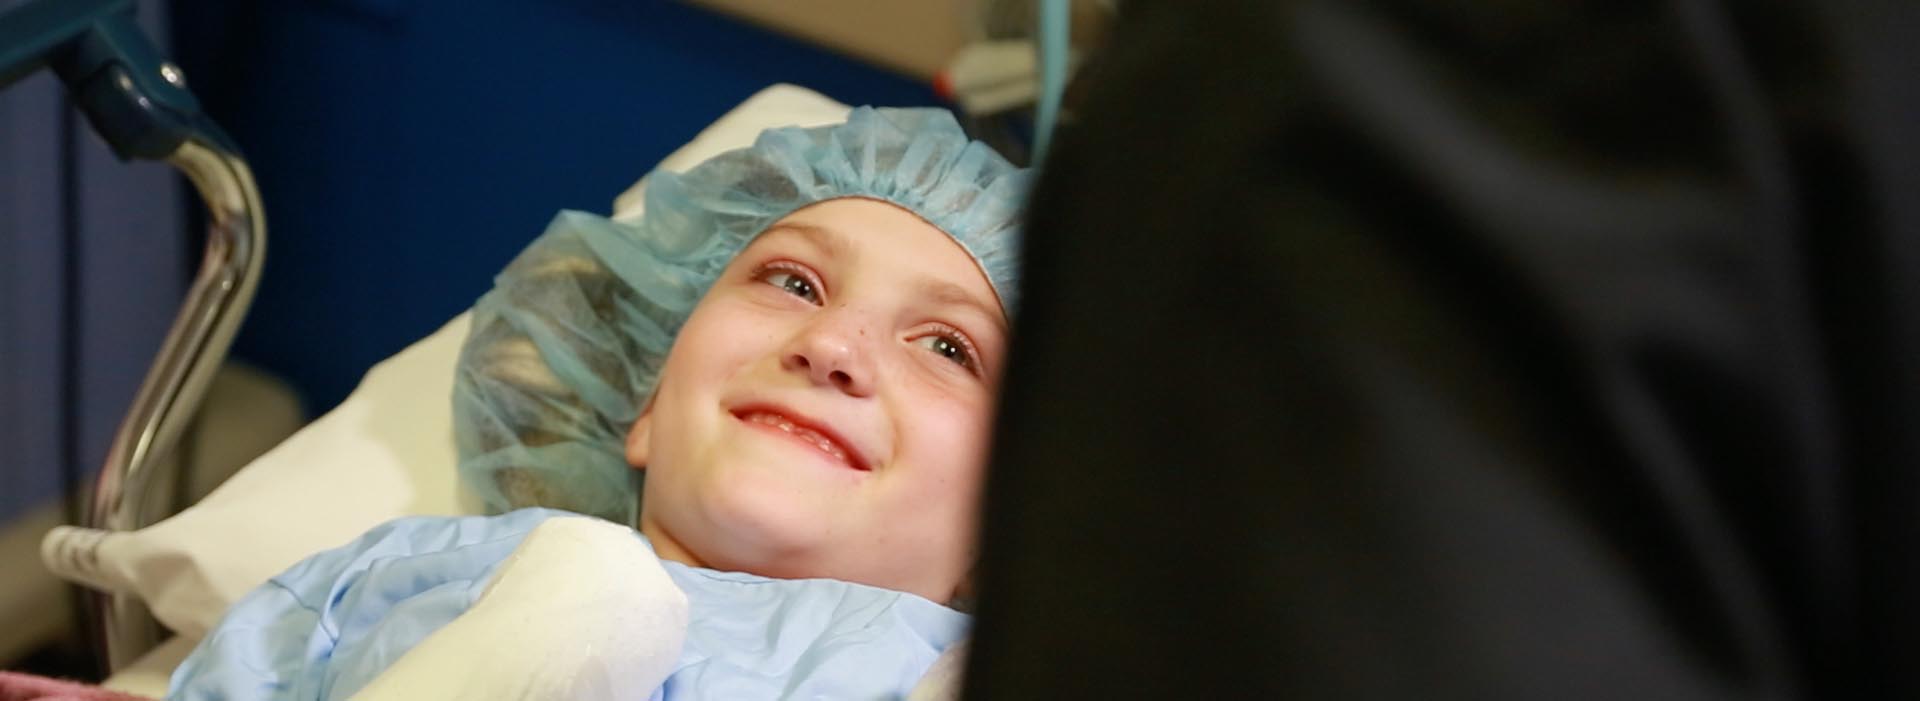 مريض طفل صغير يبتسم لشخص ما خارج الإطار